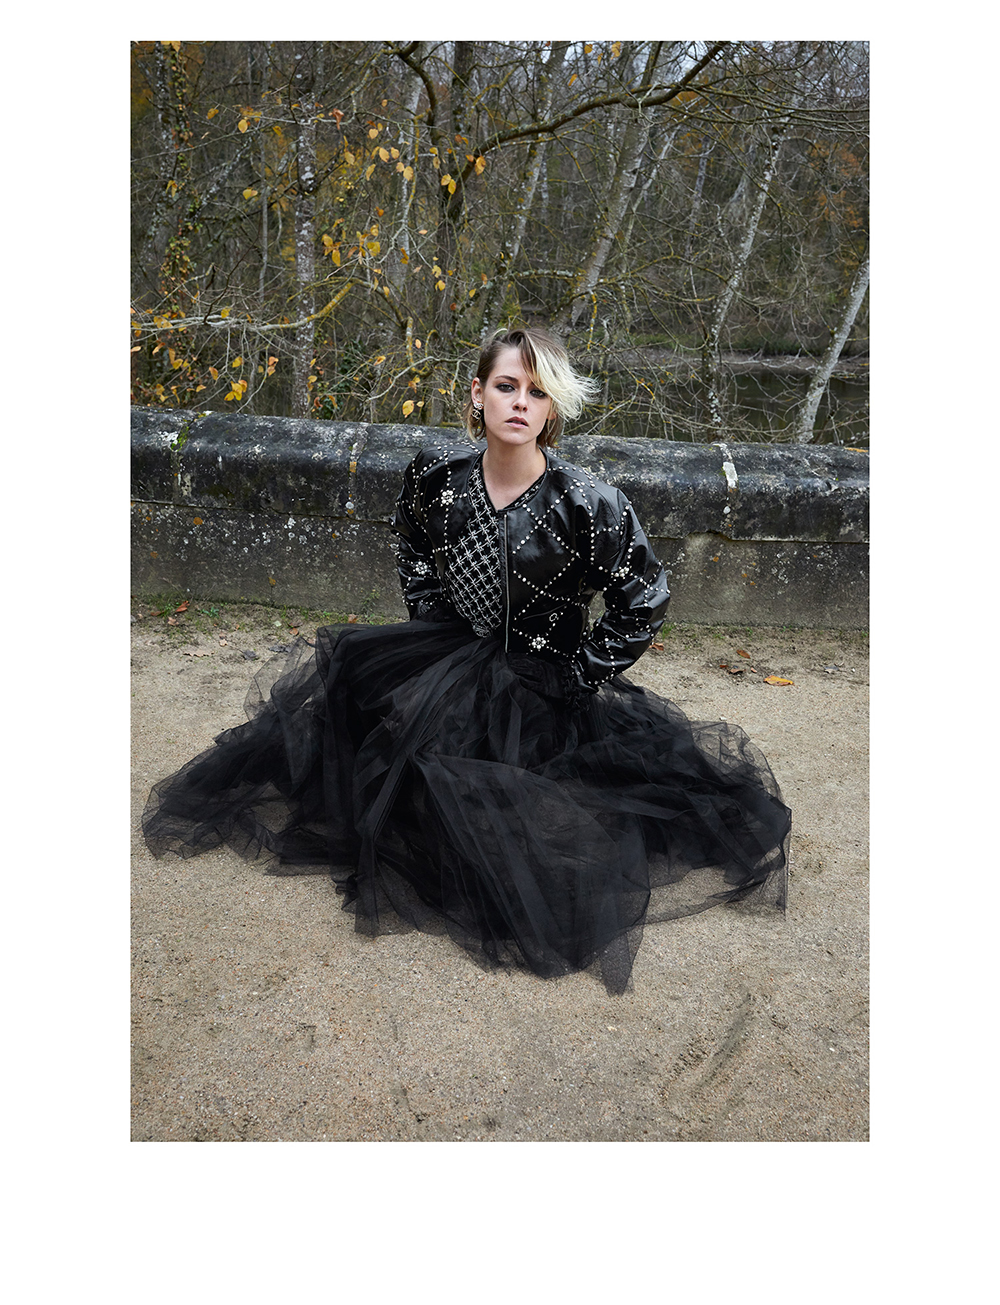 Kristen Stewart in Juergen Teller's Chanel 'Métiers D'Art' Pre-Fall 2021 —  Anne of Carversville